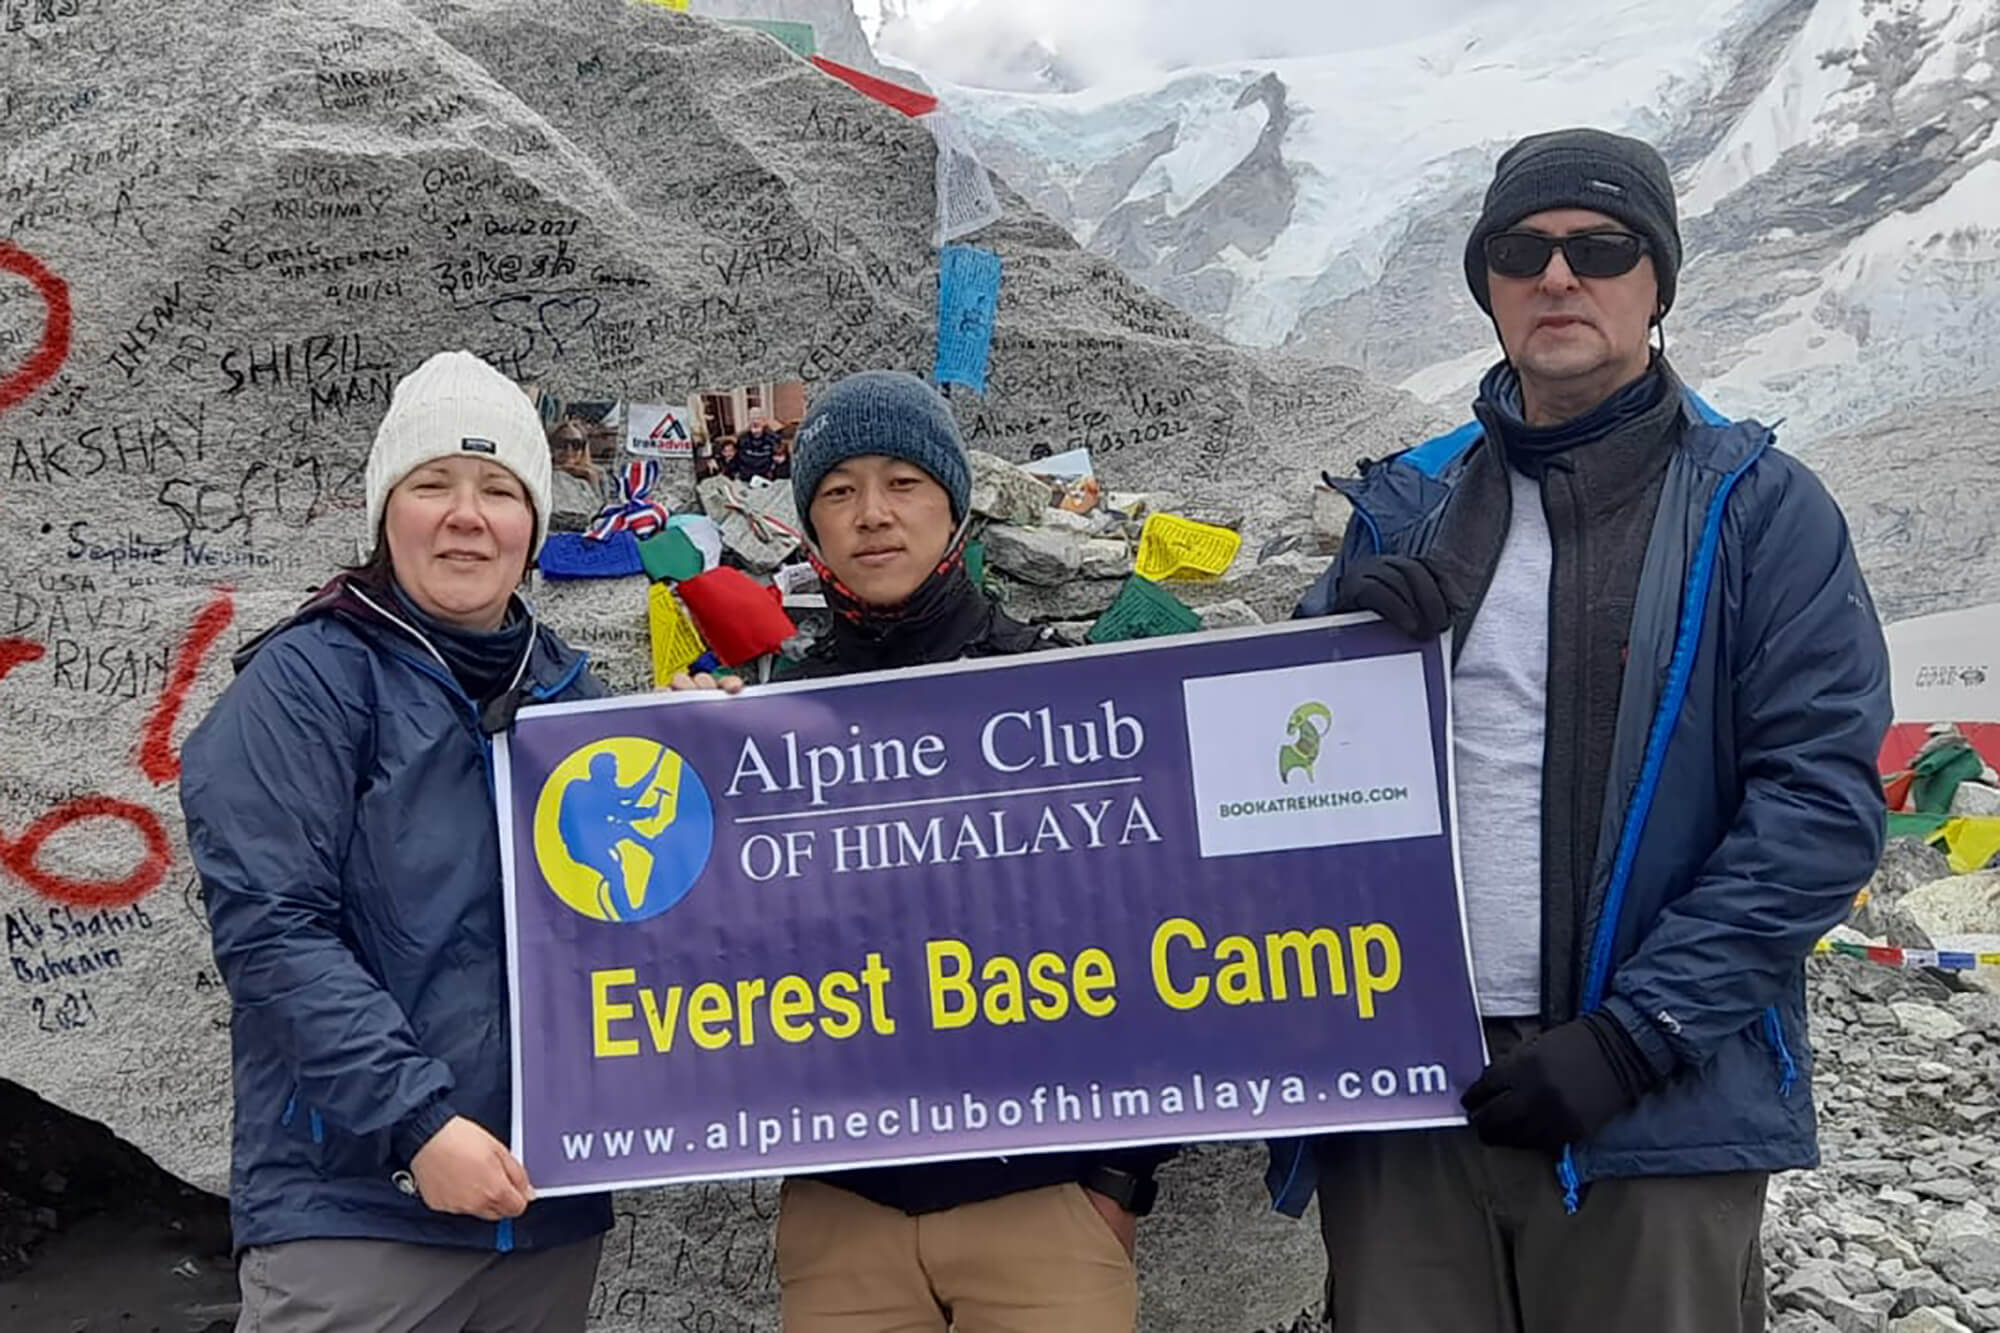 everest base camp short trek, Everest base camp trek, short Everest trek, Everest short trek